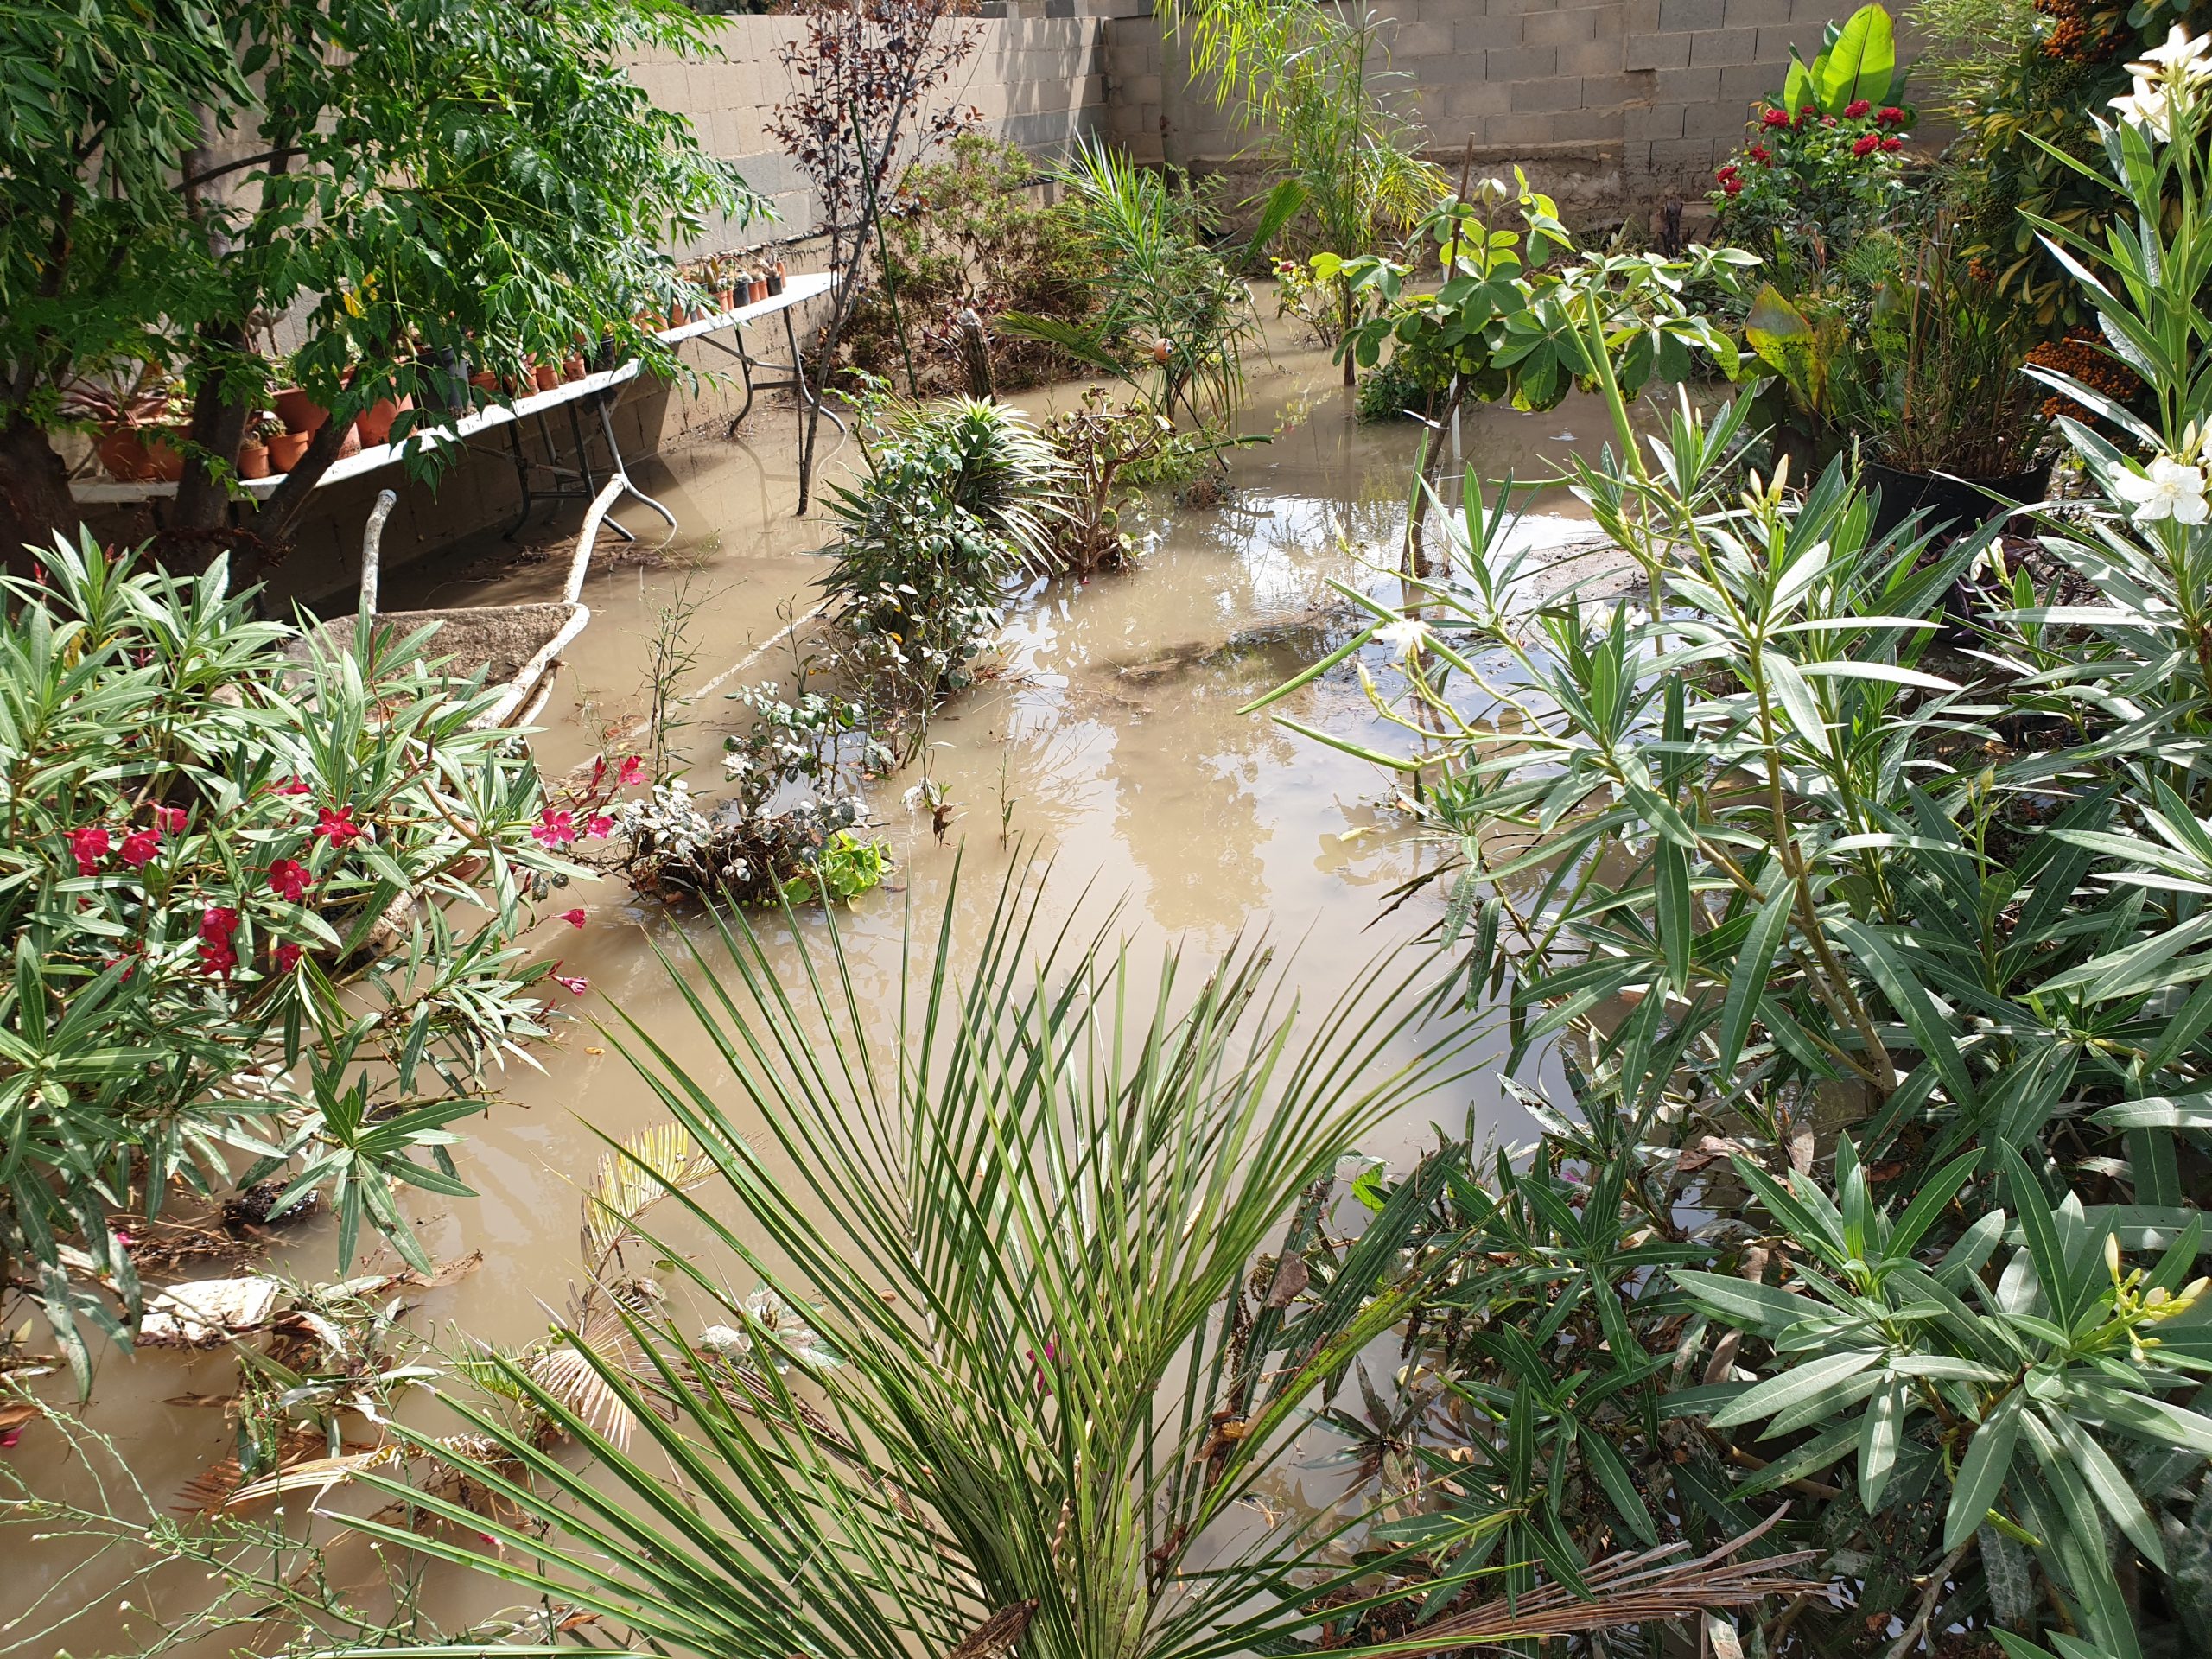 For mye regnvann i en hage gir problemer